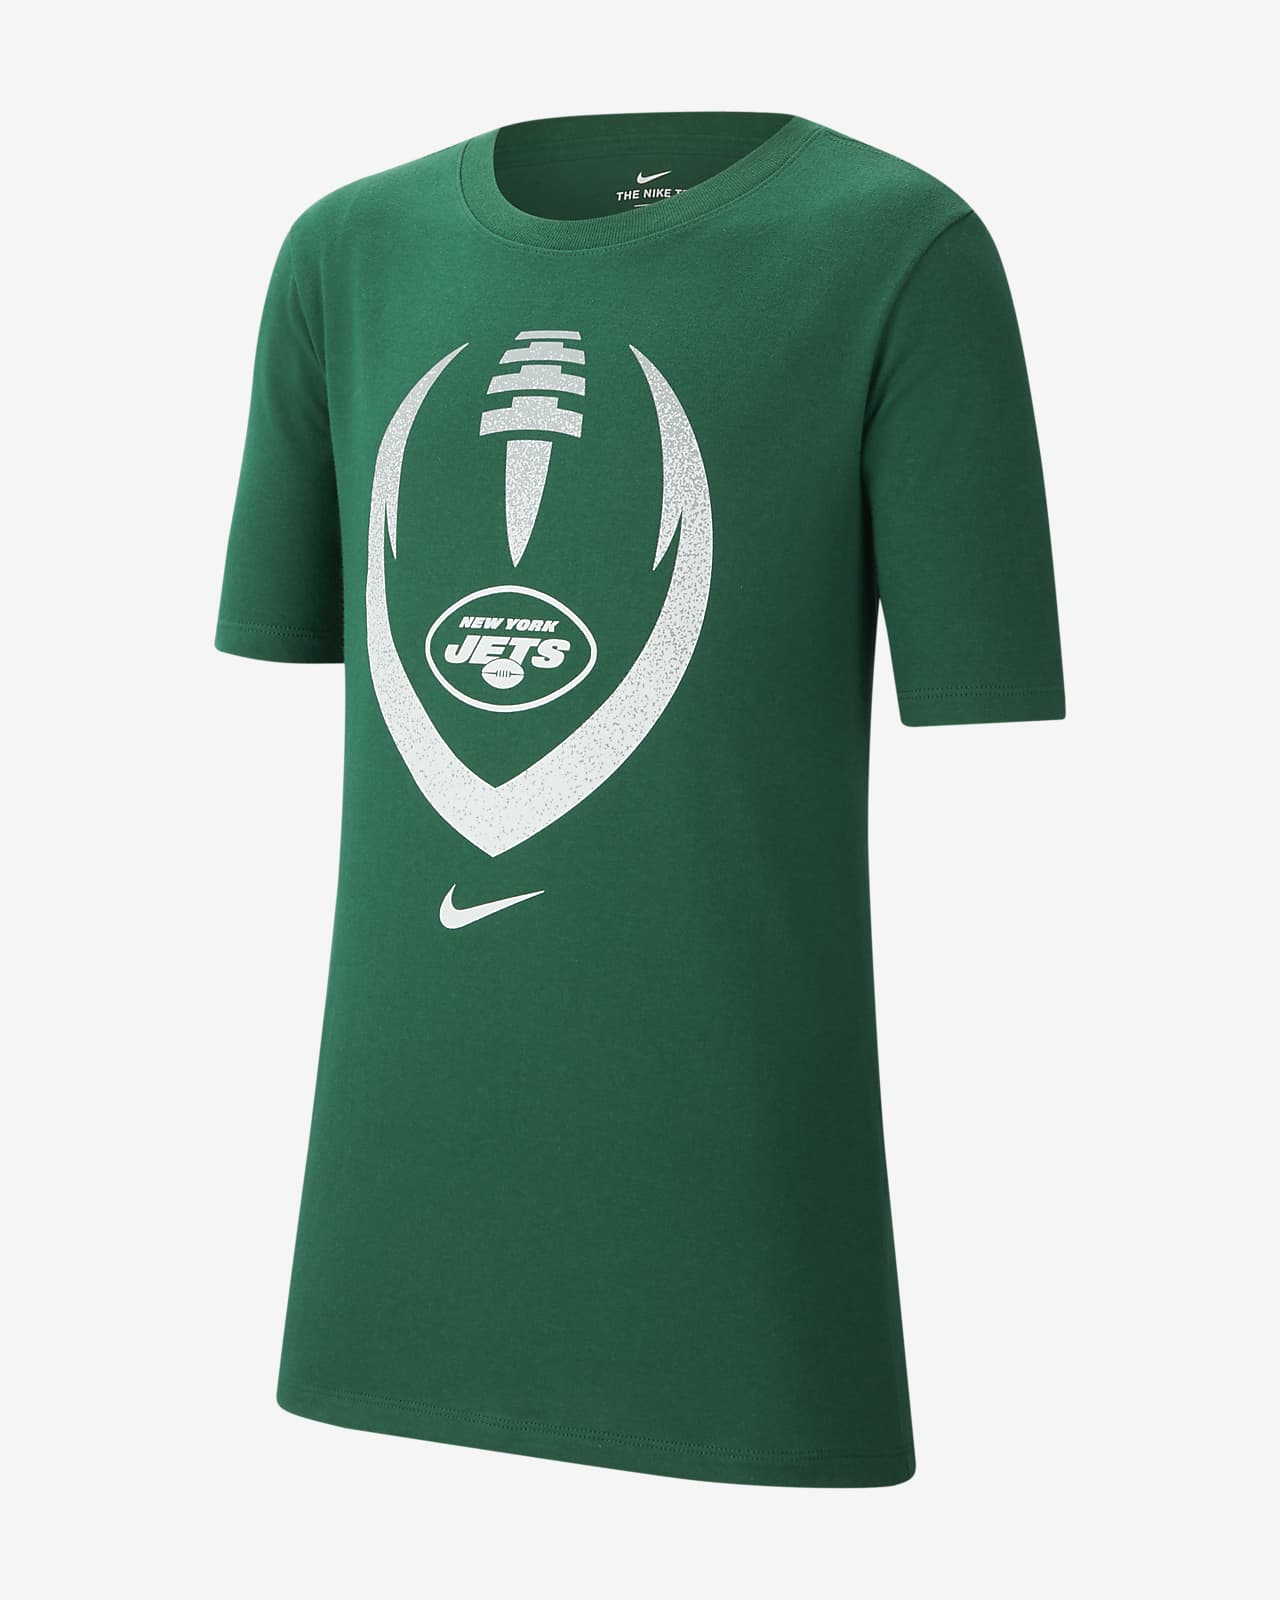 Nike (NFL Jets) Big Kids' T-Shirt